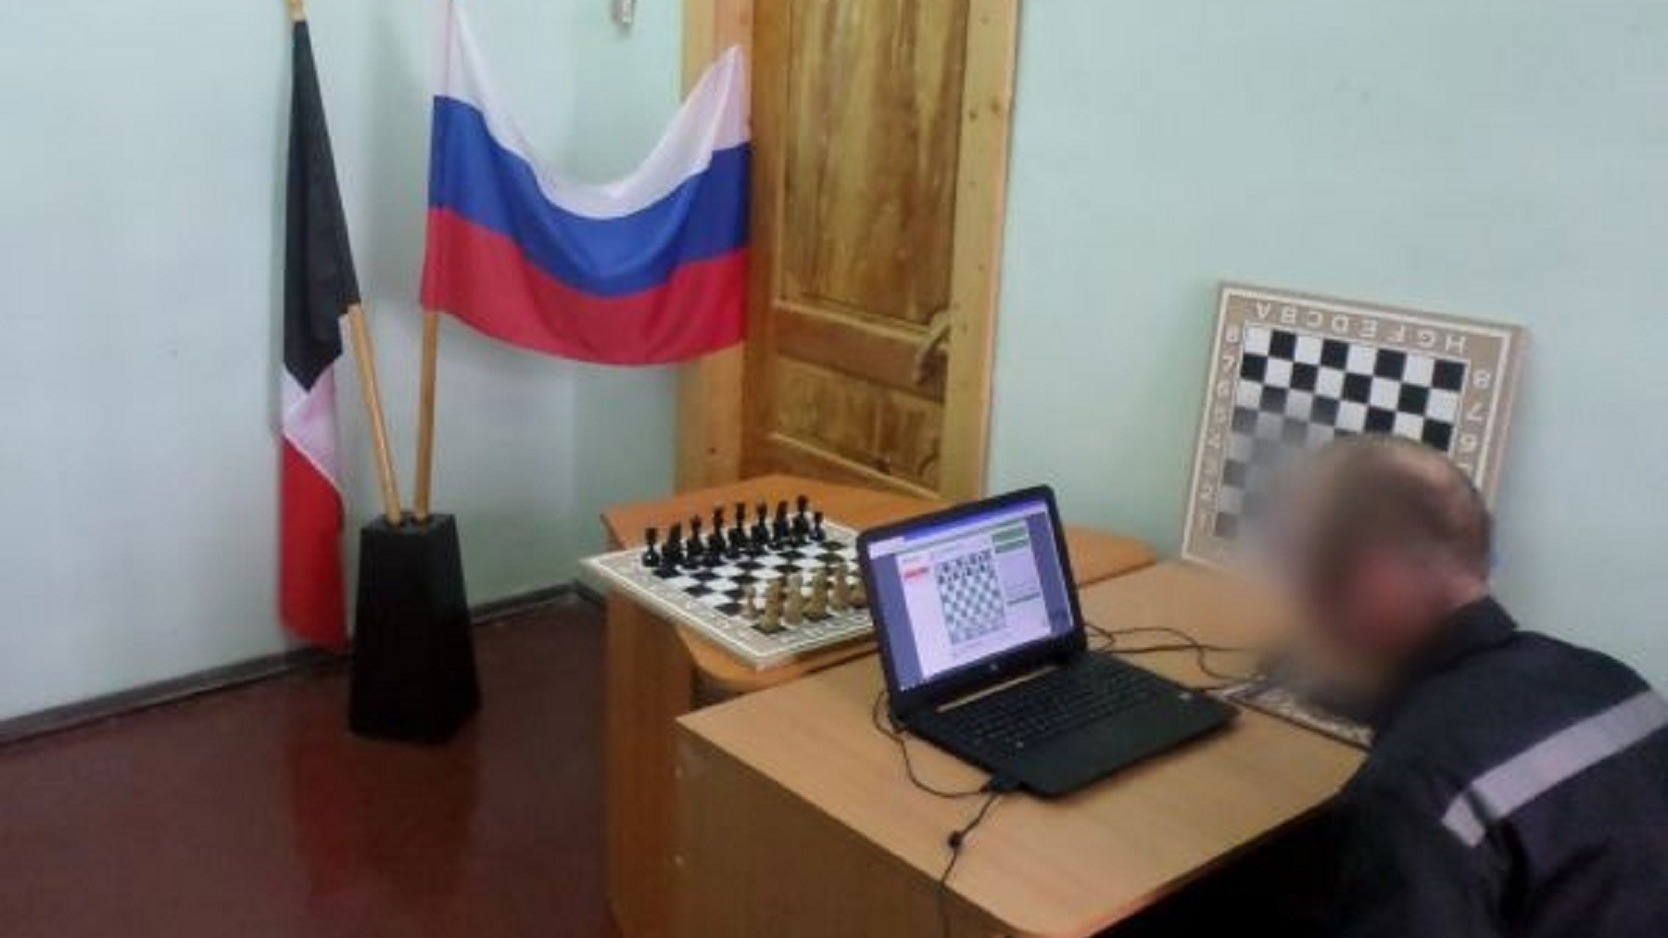 Осужденный из Удмуртии получил доступ в Интернет и успешно сыграл в шахматном турнире